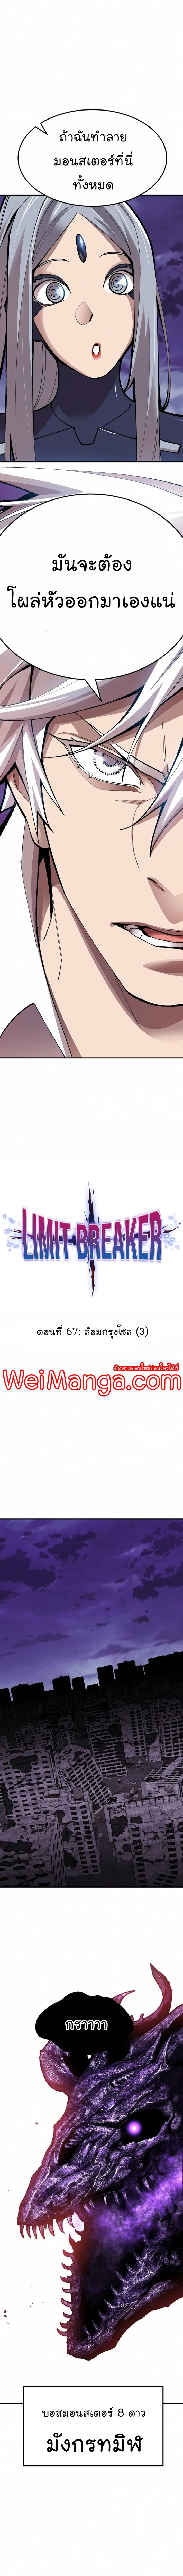 Limit Breaker 67 (4)